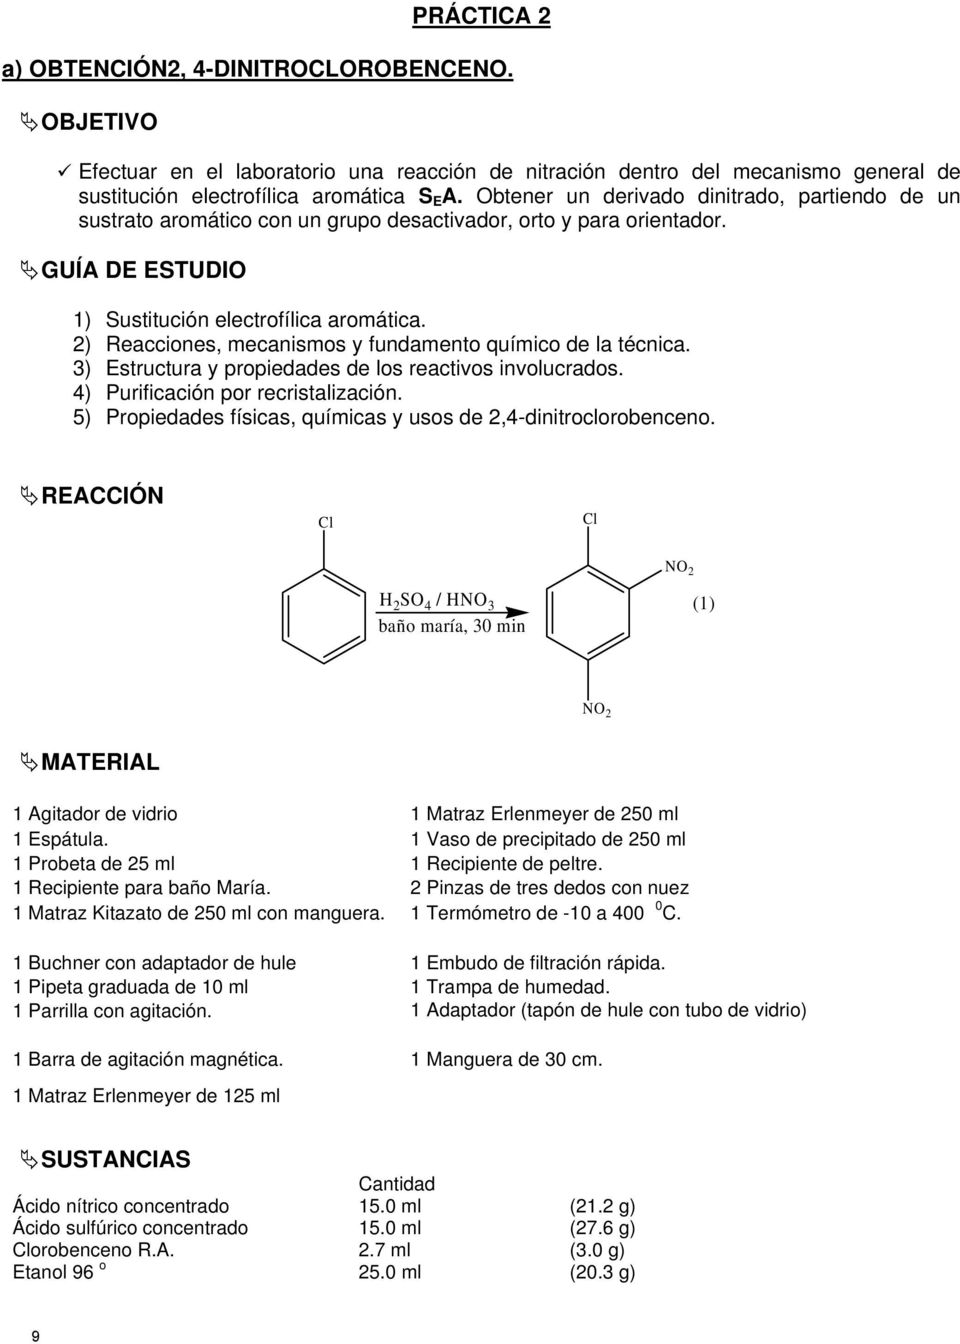 2) Reacciones, mecanismos y fundamento químico de la técnica. 3) Estructura y propiedades de los reactivos involucrados. 4) Purificación por recristalización.